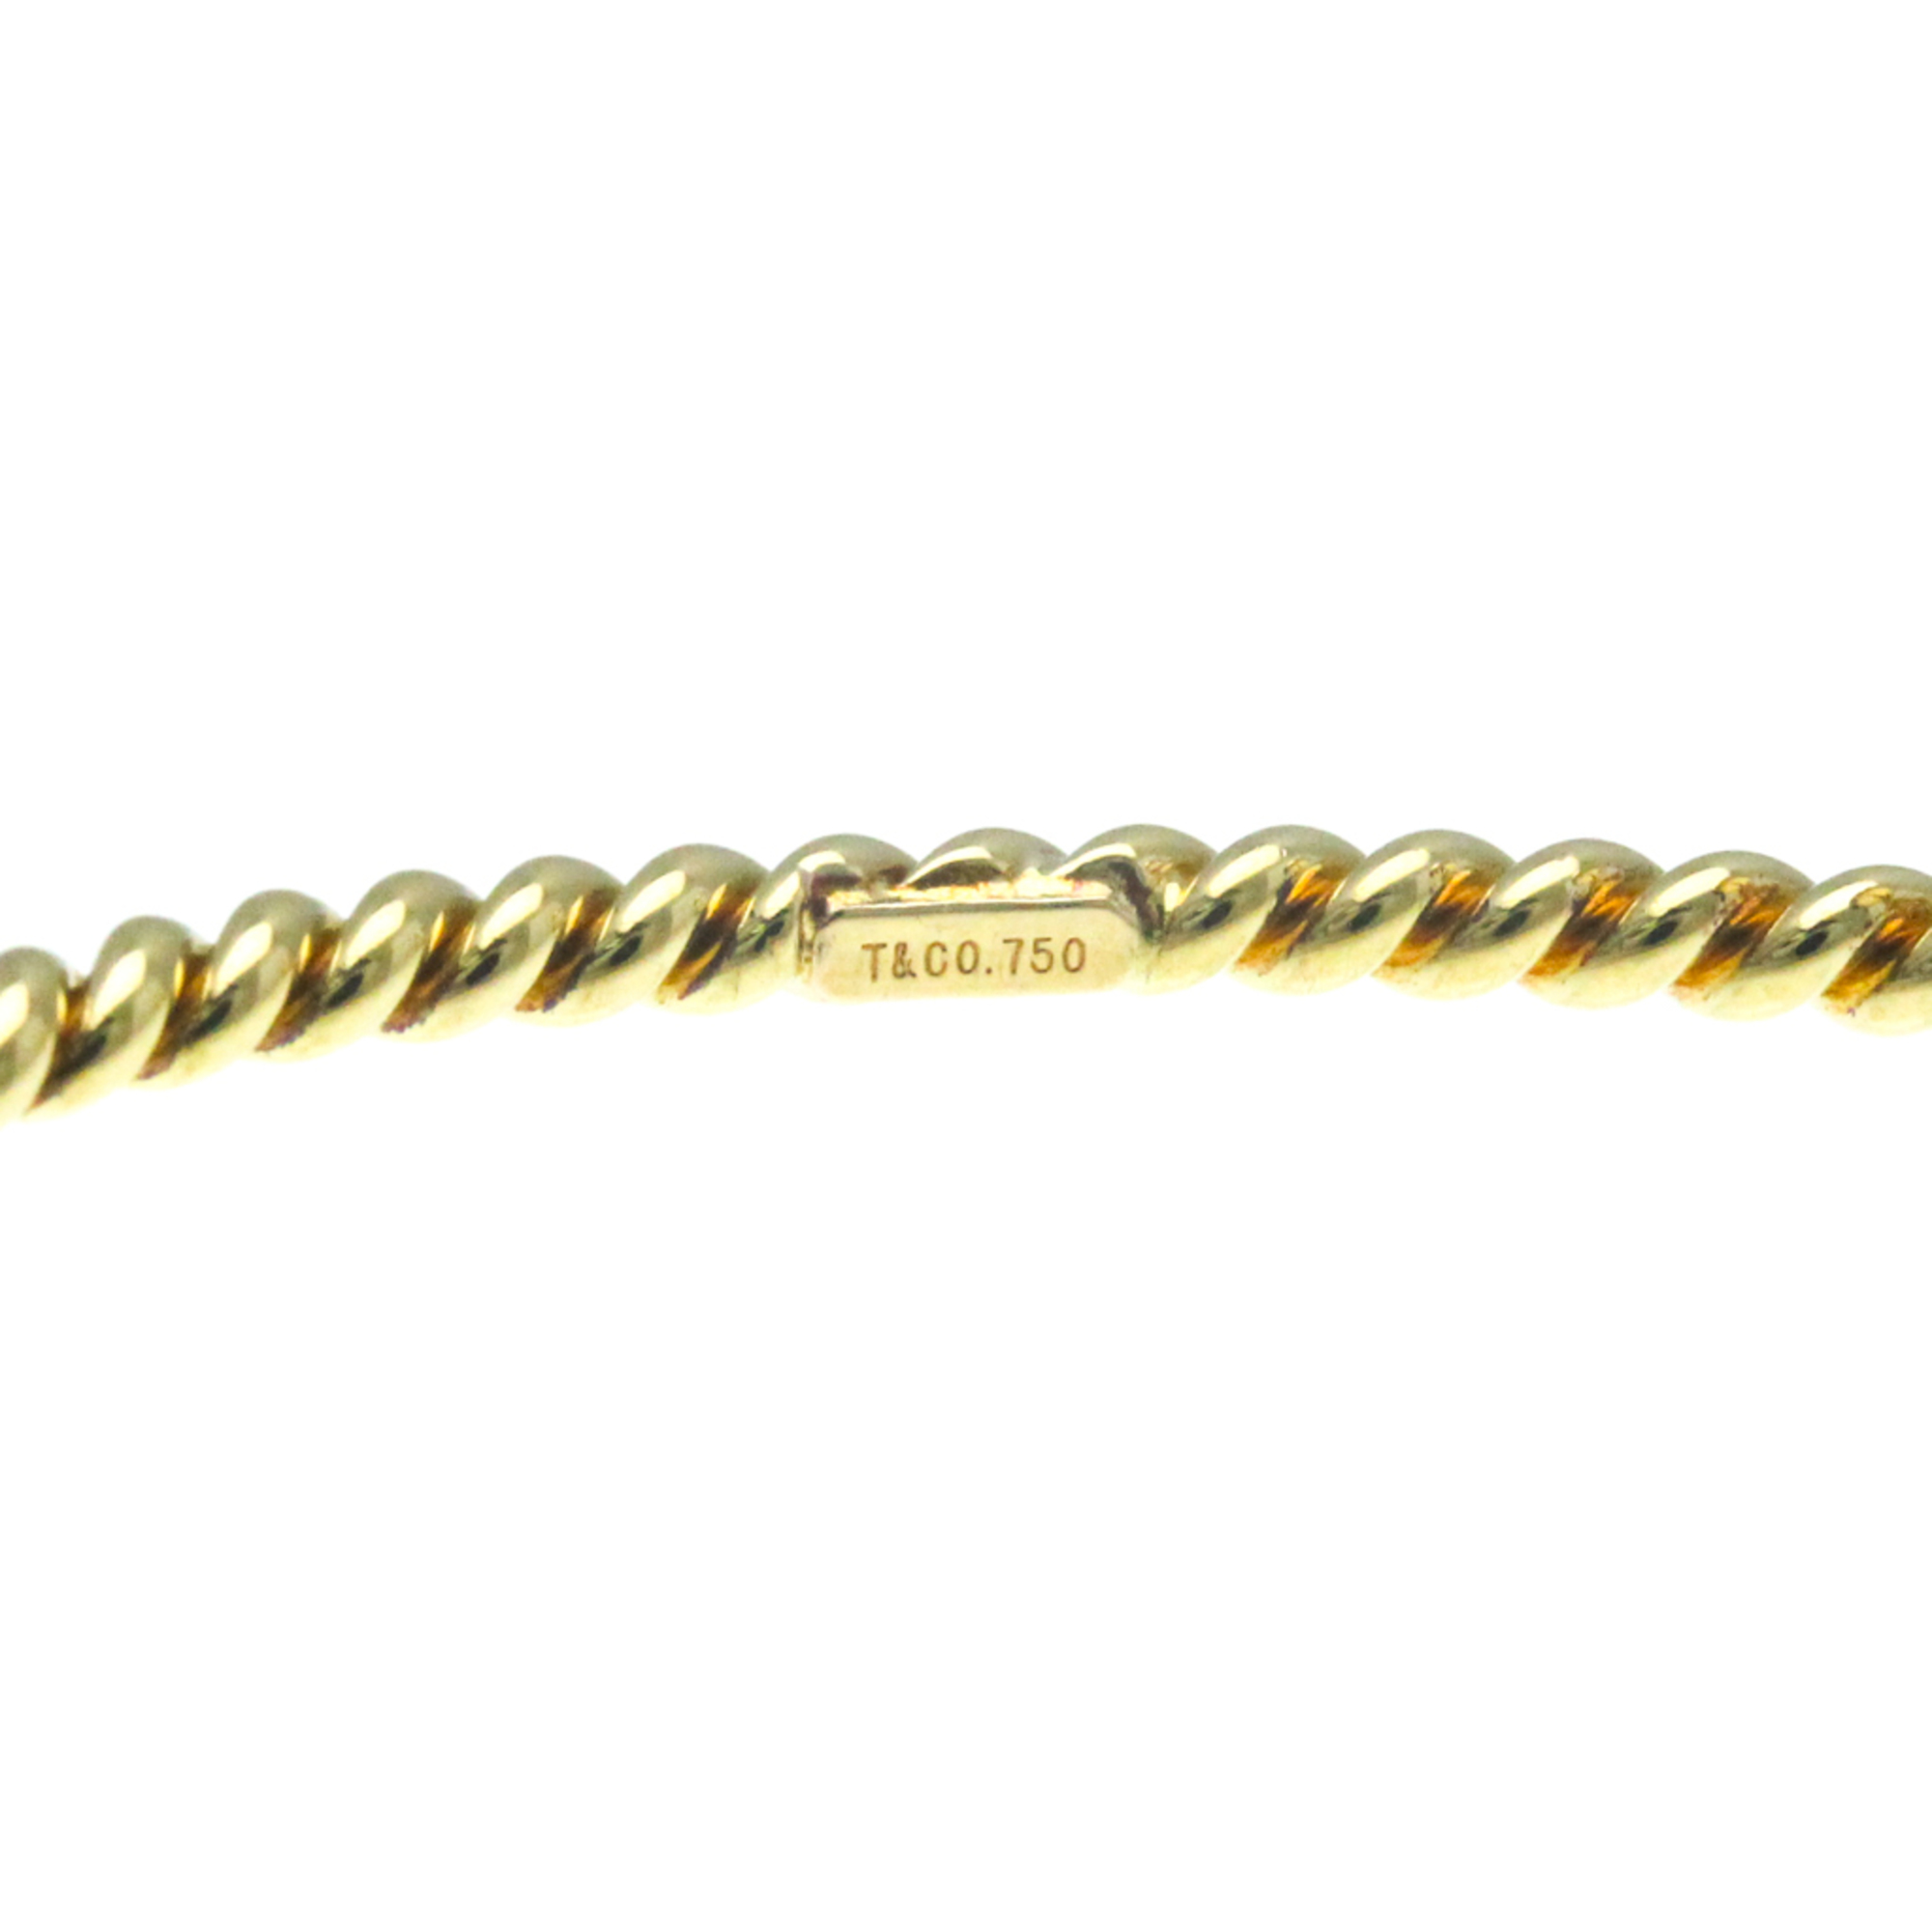 Tiffany Twist Bangle Yellow Gold (18K) No Stone Bangle Gold